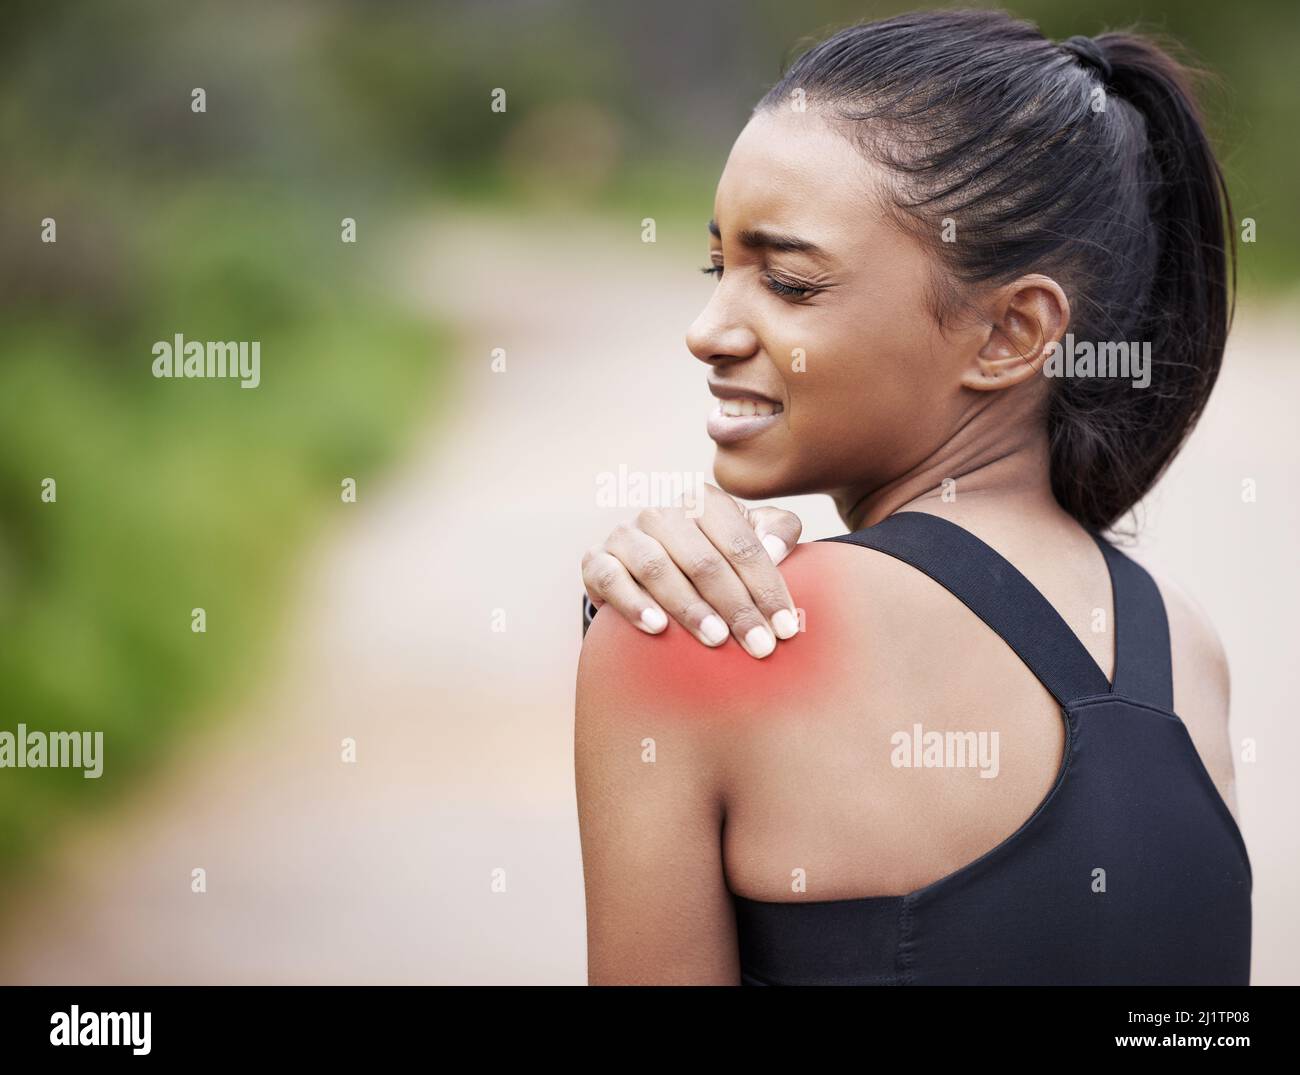 Questo muscolo si sente così stretto. Scatto di una giovane donna sportiva che avverte dolore alla spalla mentre si esercita all'aperto. Foto Stock